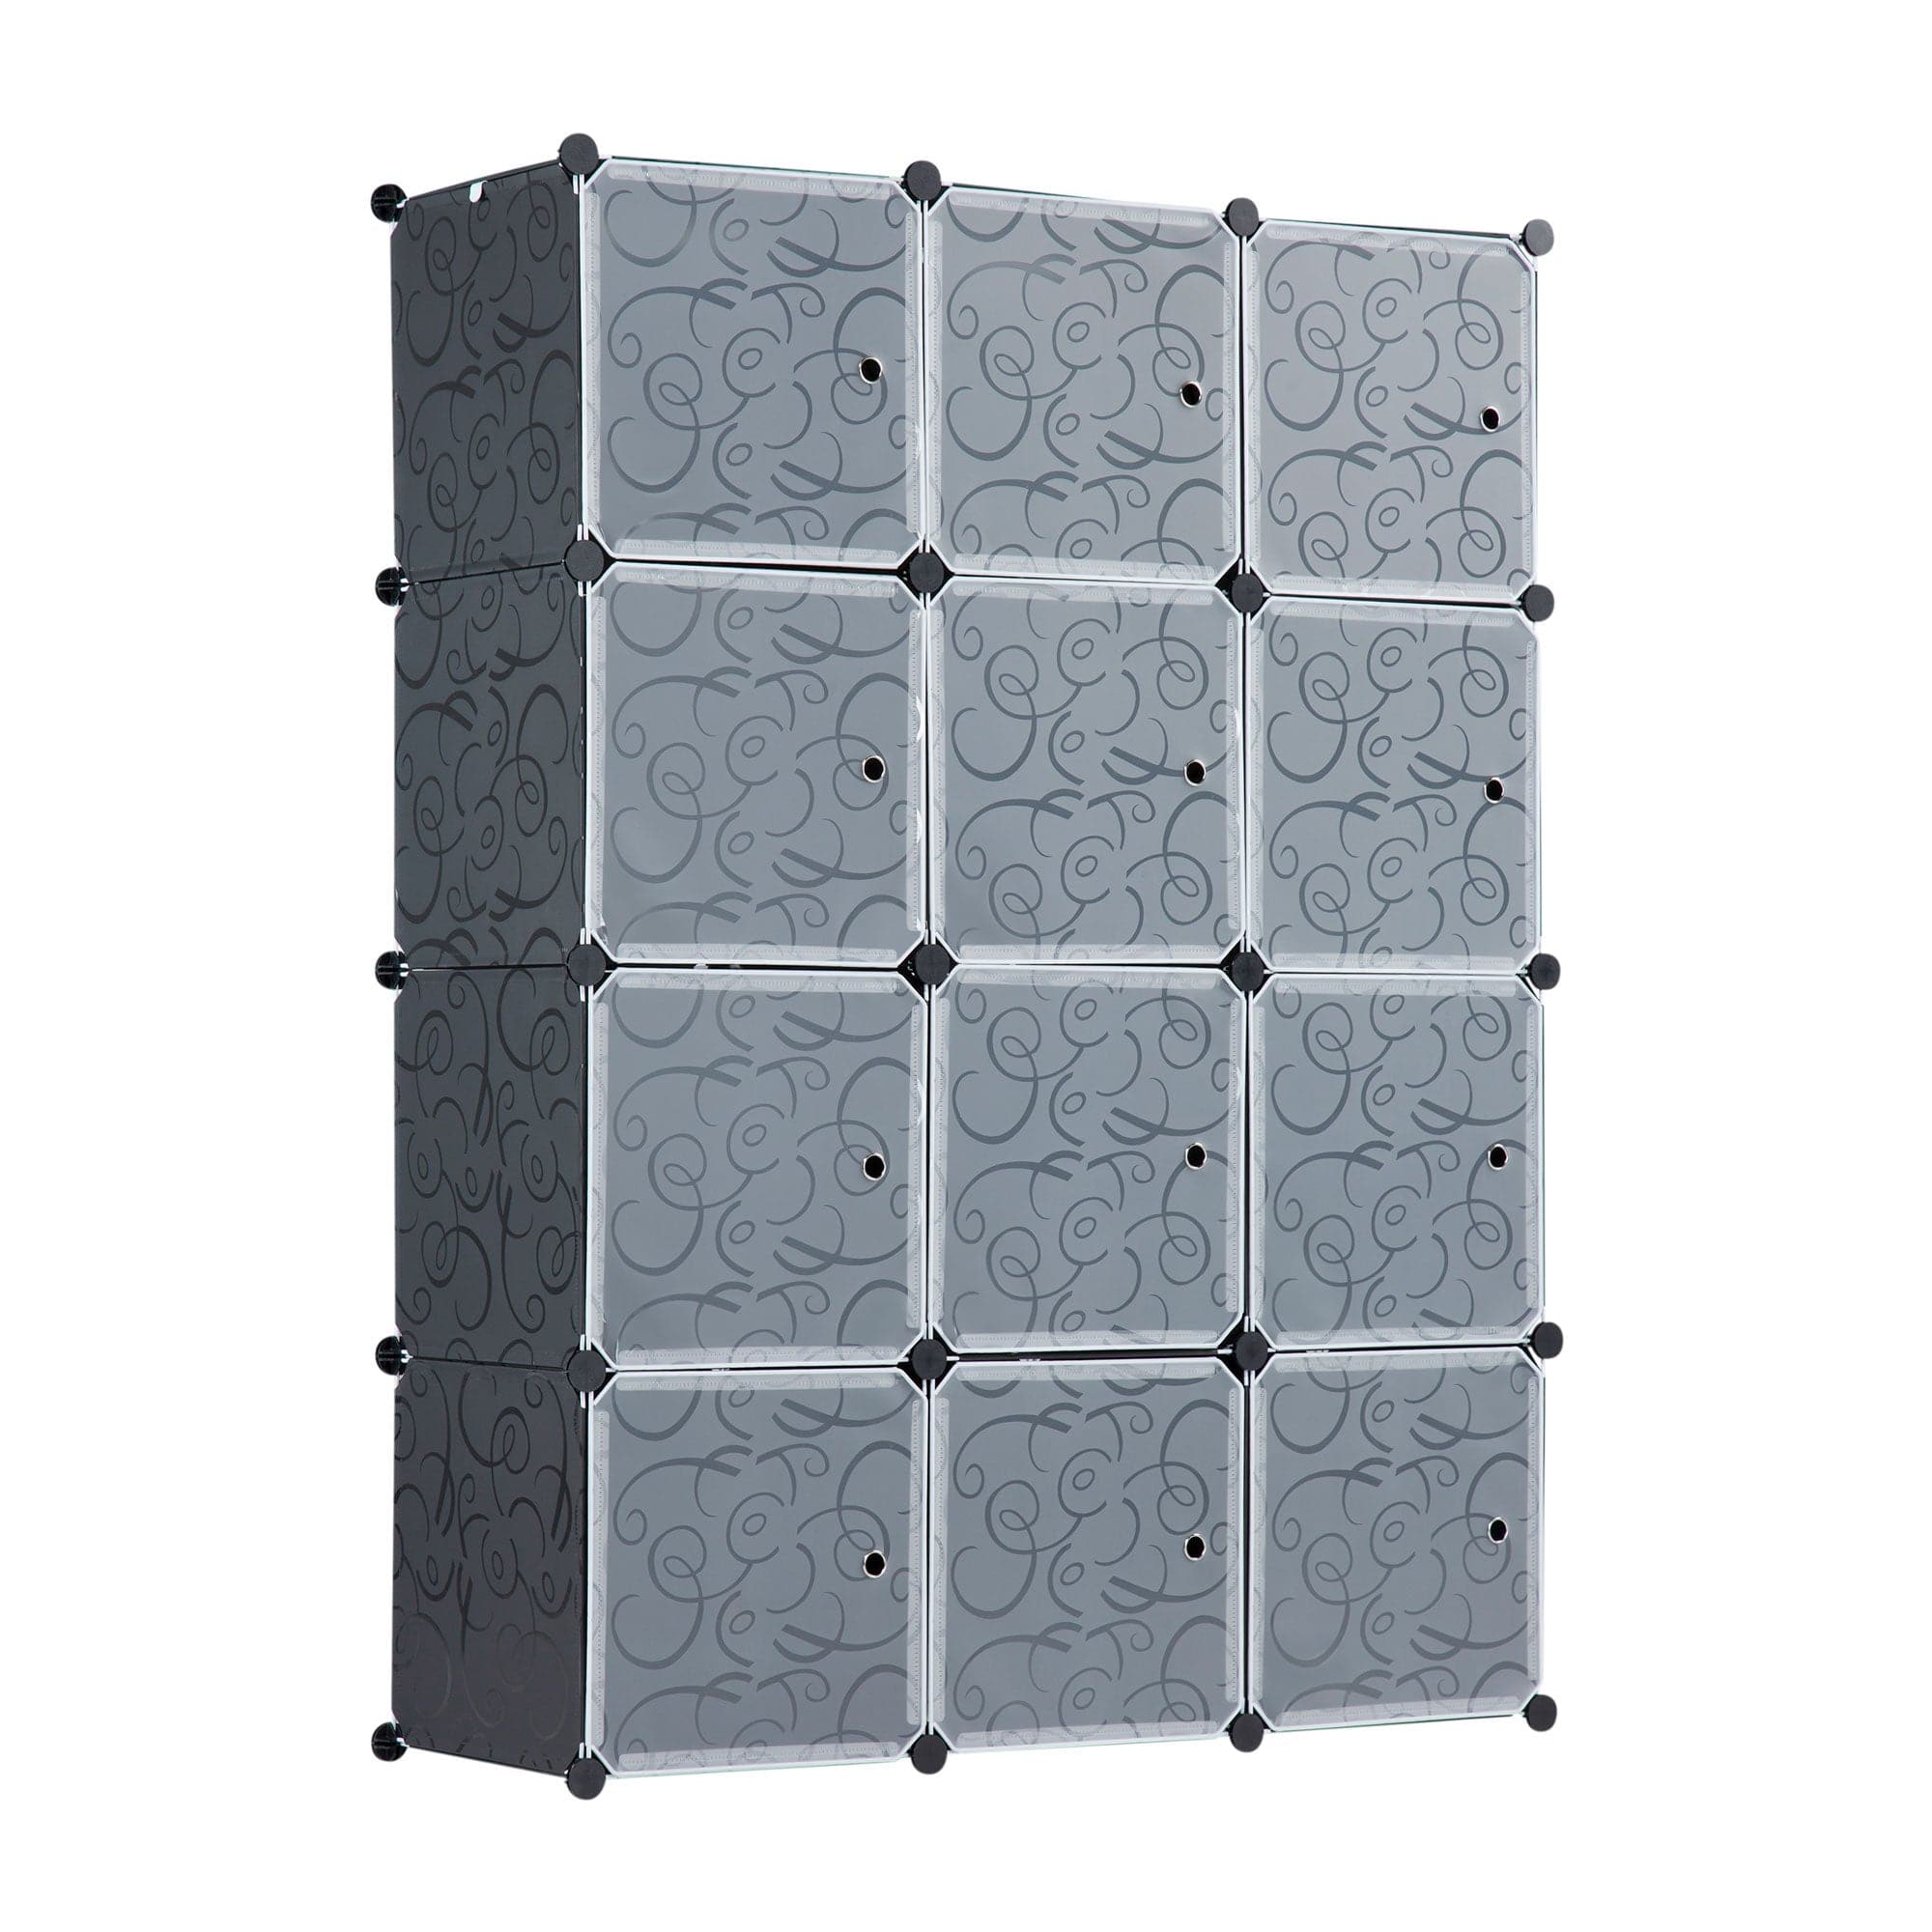 Portable Clothes Closet Rack - 12 Cubes - Mount-It!